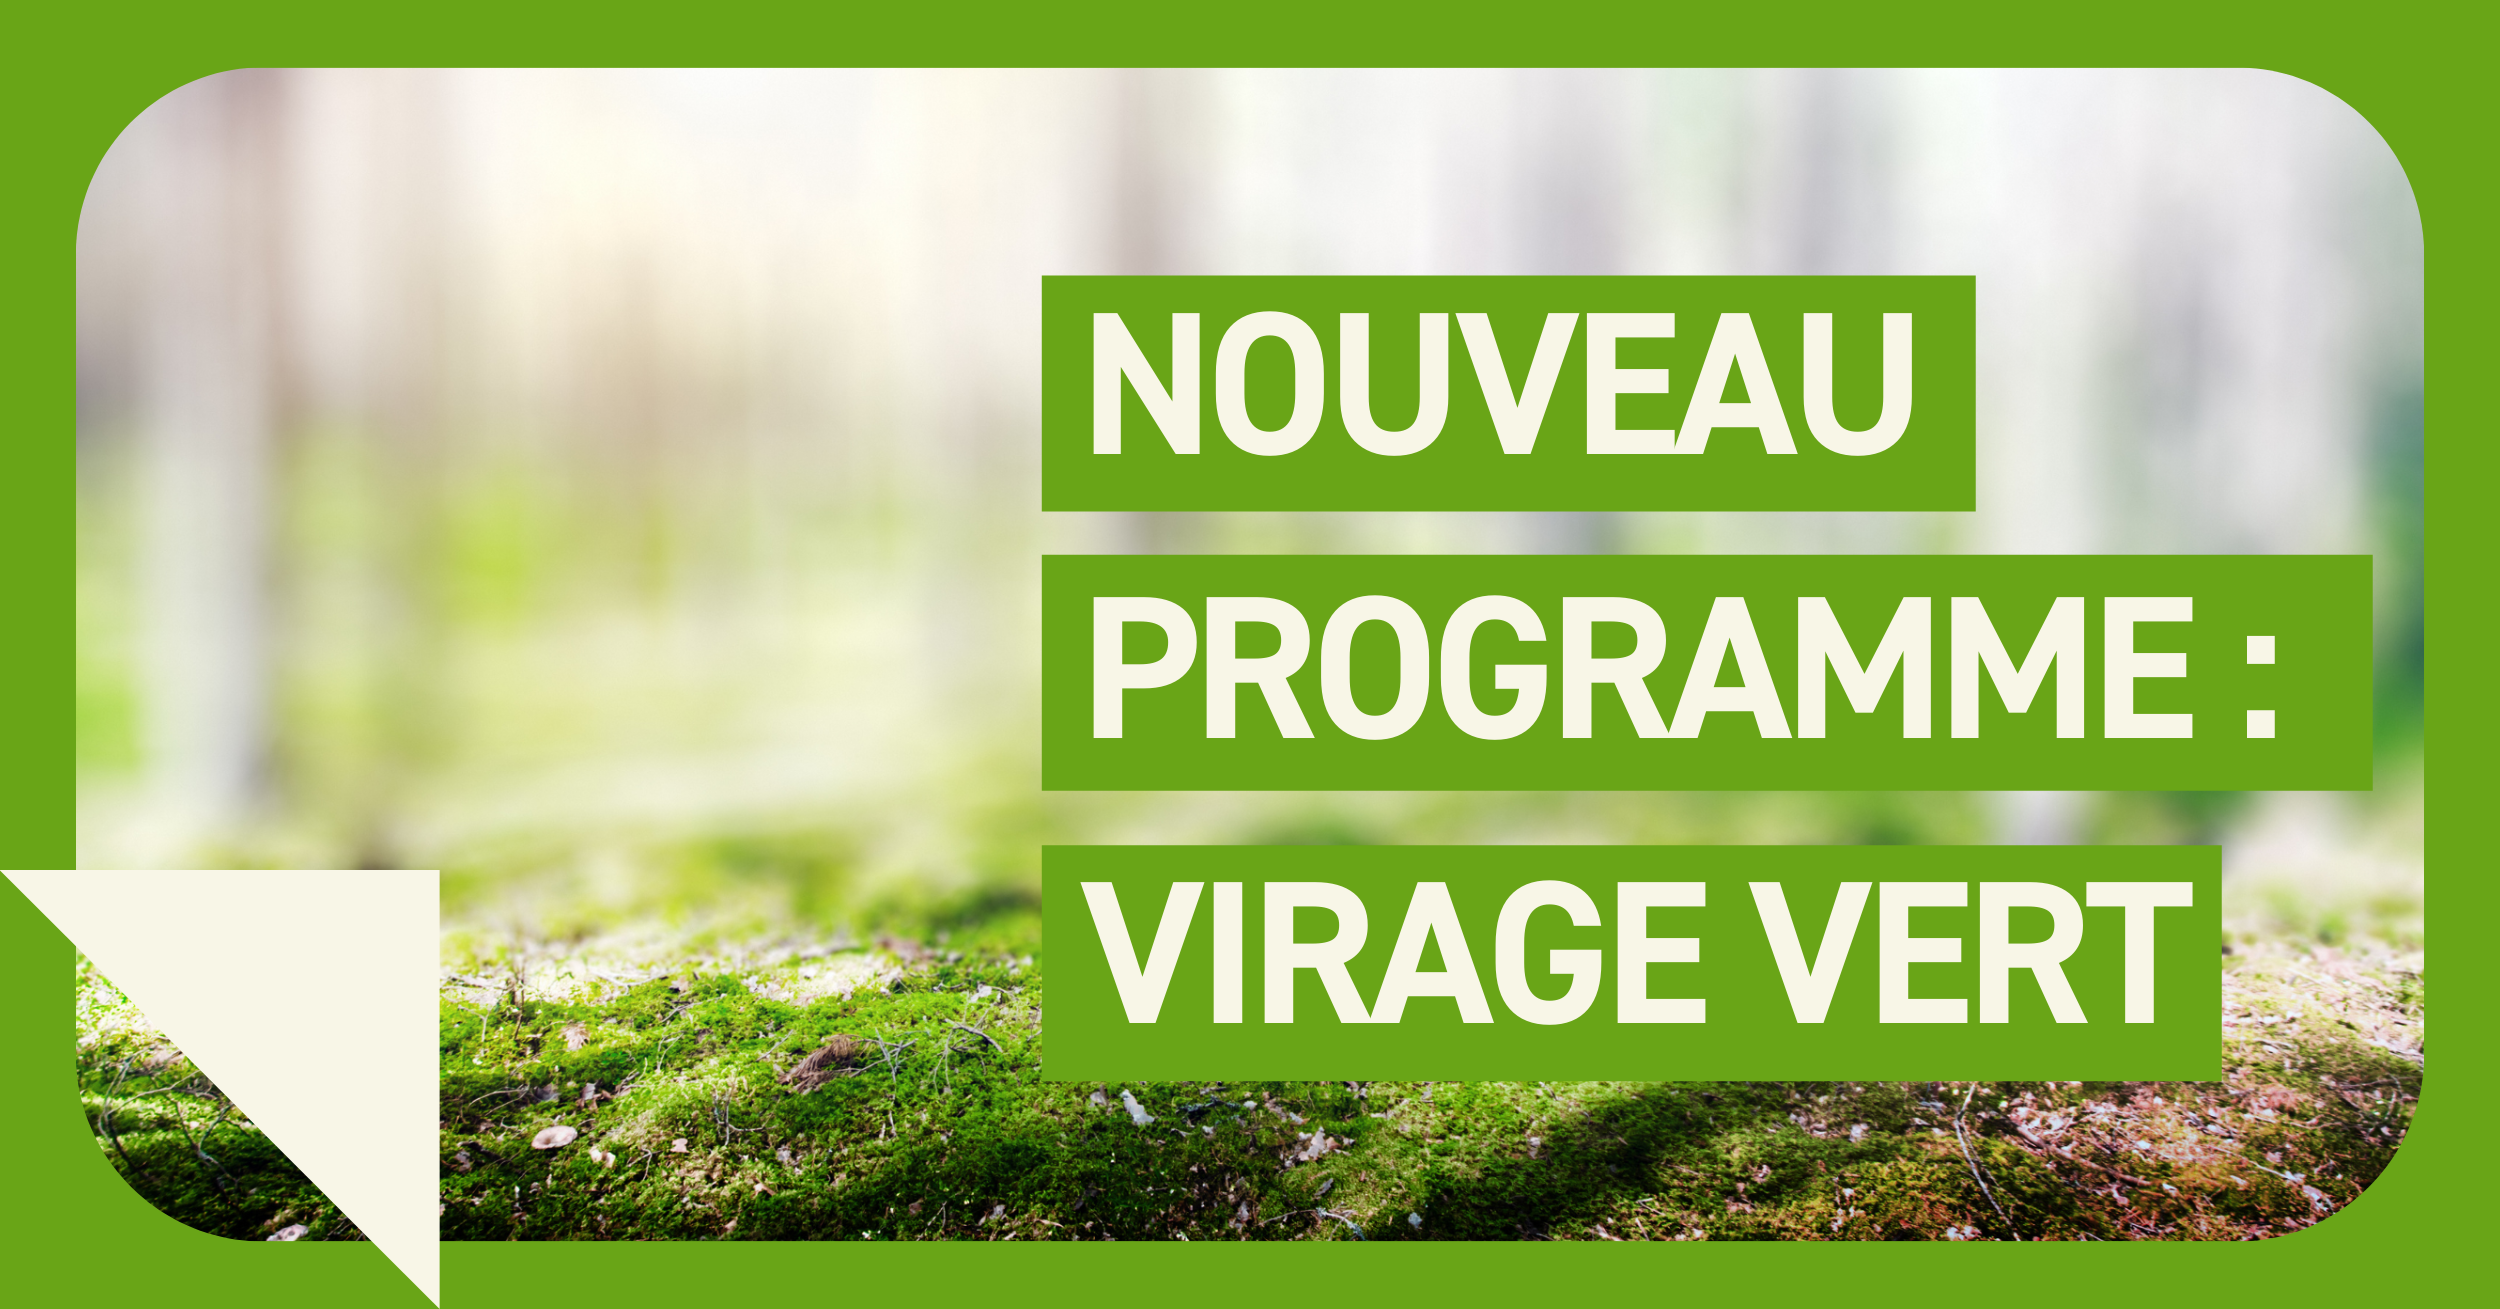 Nouveau programme : Virage Vert